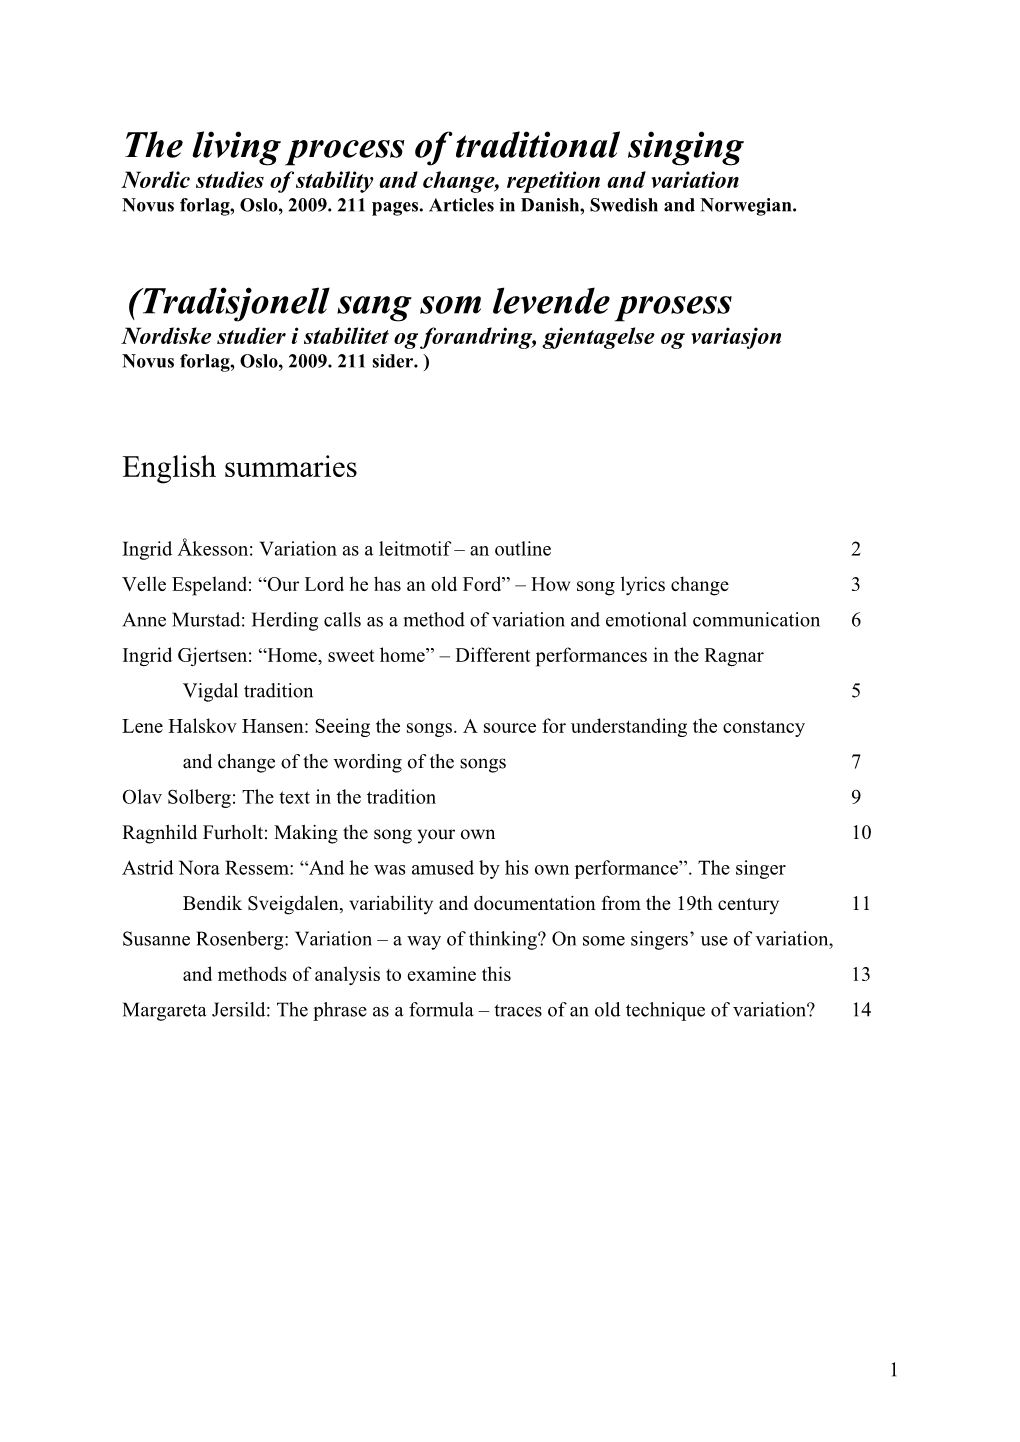 Tradisjonell Sang Som Levende Prosess Nordiske Studier I Stabilitet Og Forandring, Gjentagelse Og Variasjon Novus Forlag, Oslo, 2009